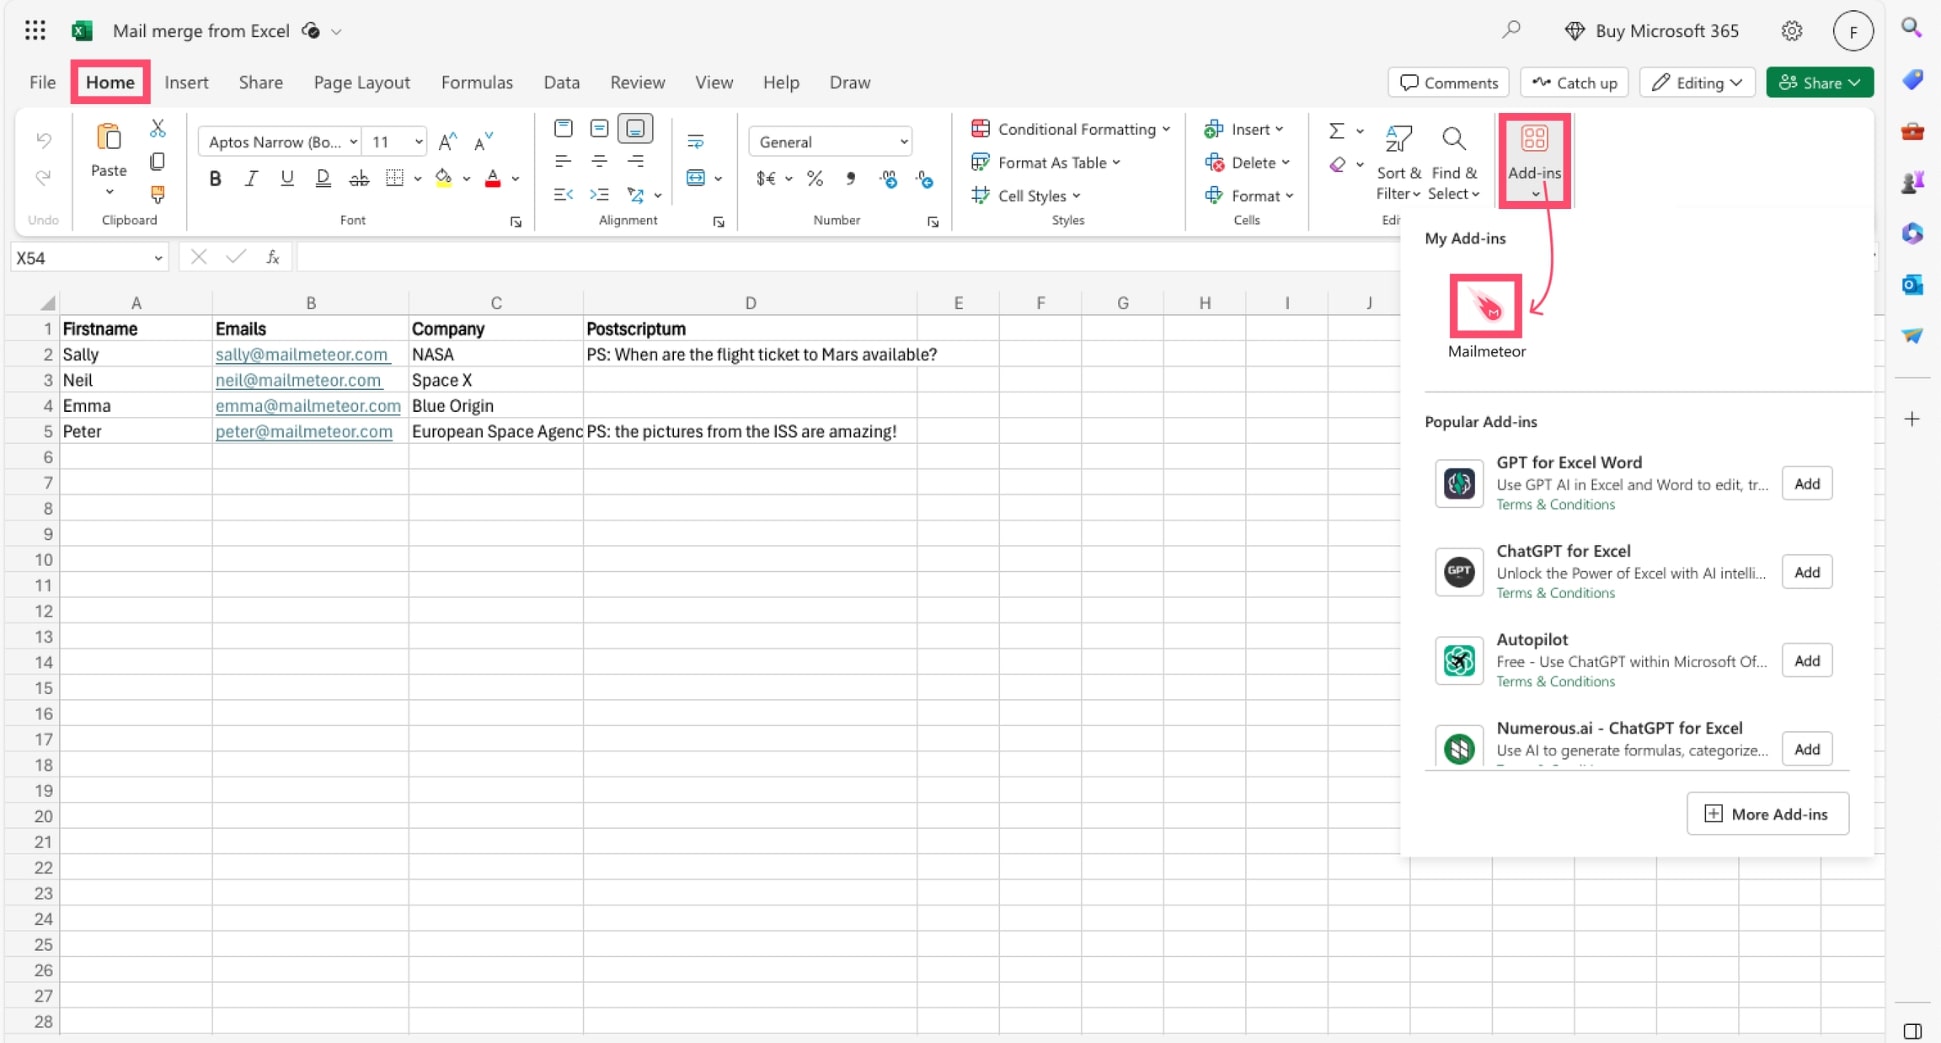 Open Mailmeteor in Excel